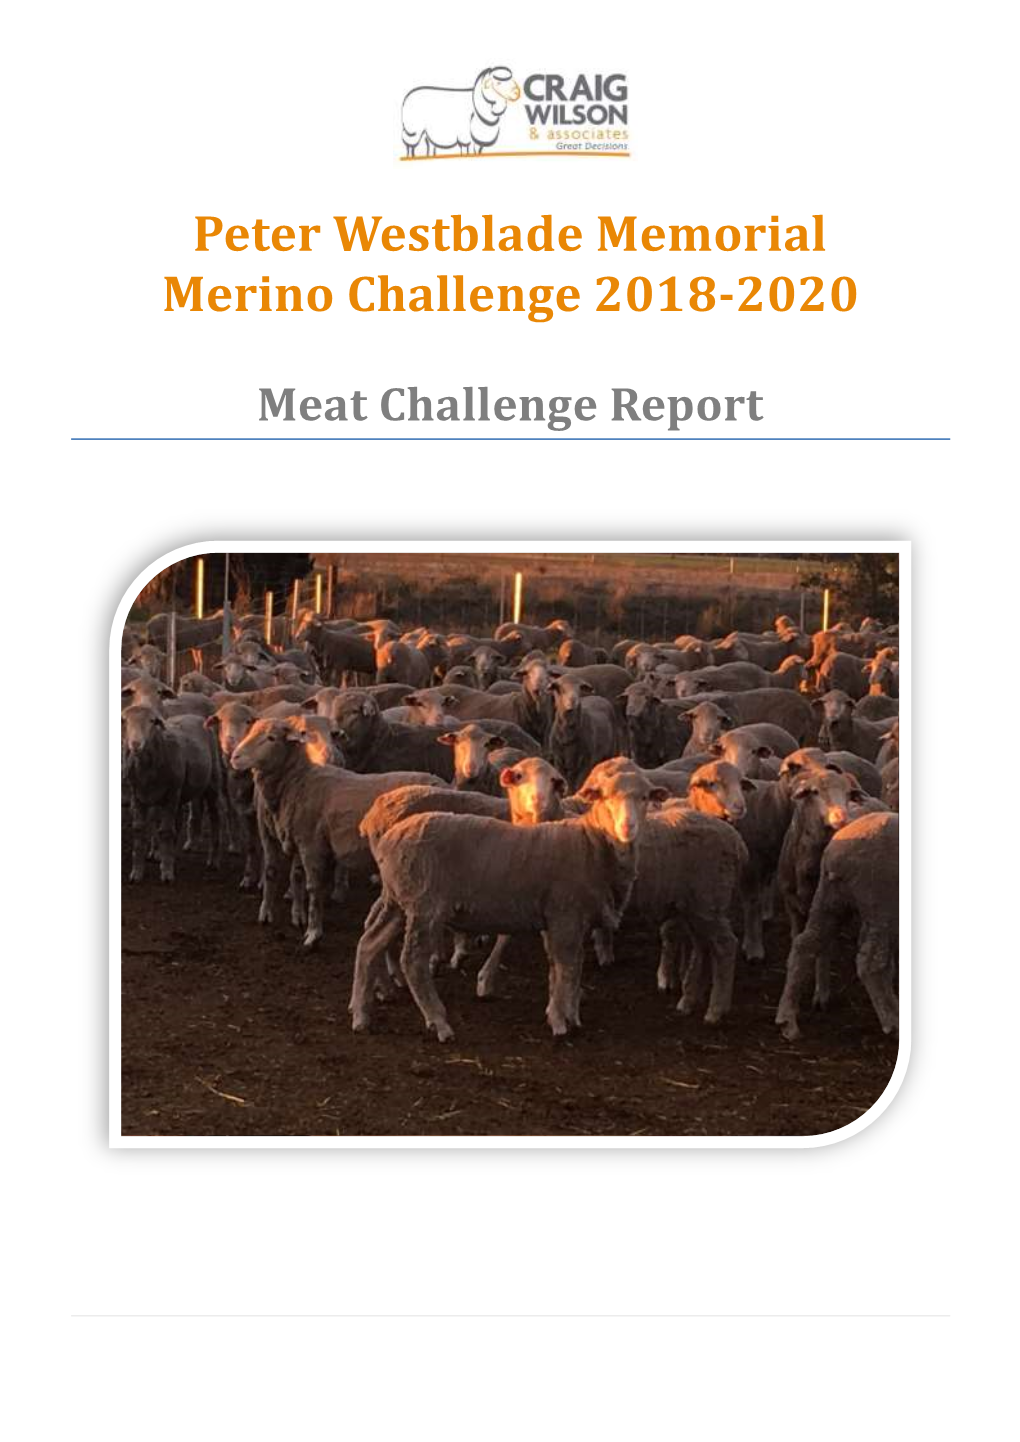 Peter Westblade Memorial Merino Challenge 2018-2020 Meat Report